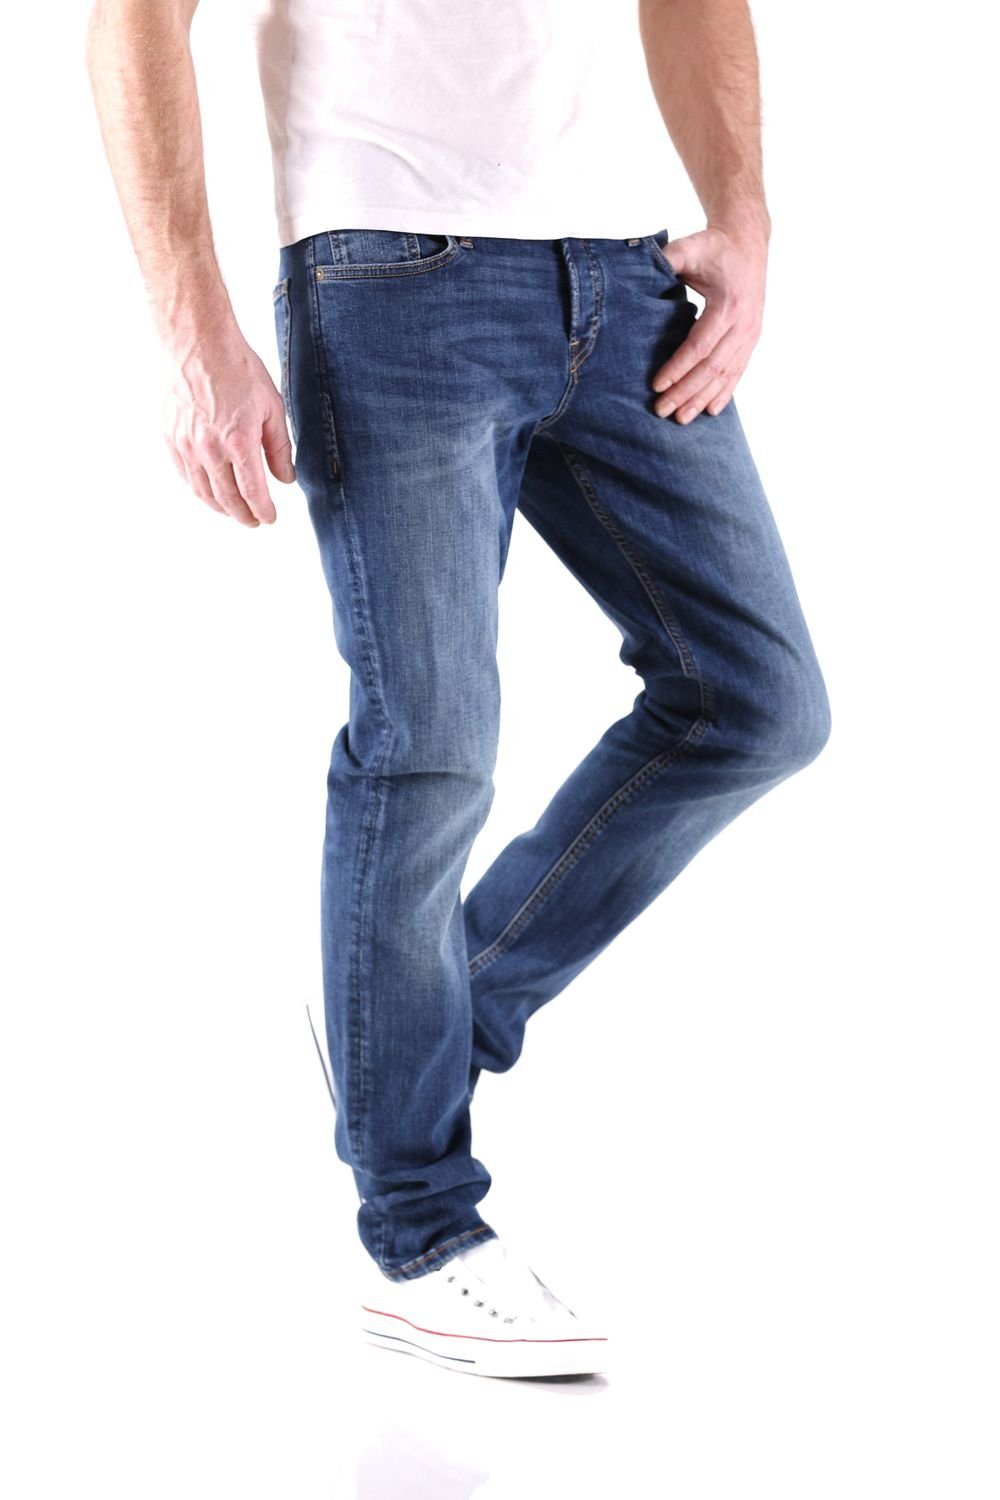 Jack & Comfort-fit-Jeans Mike (AGI & Herren Jones Fit Blau 005) Jones Jack Comfort Jeans Original